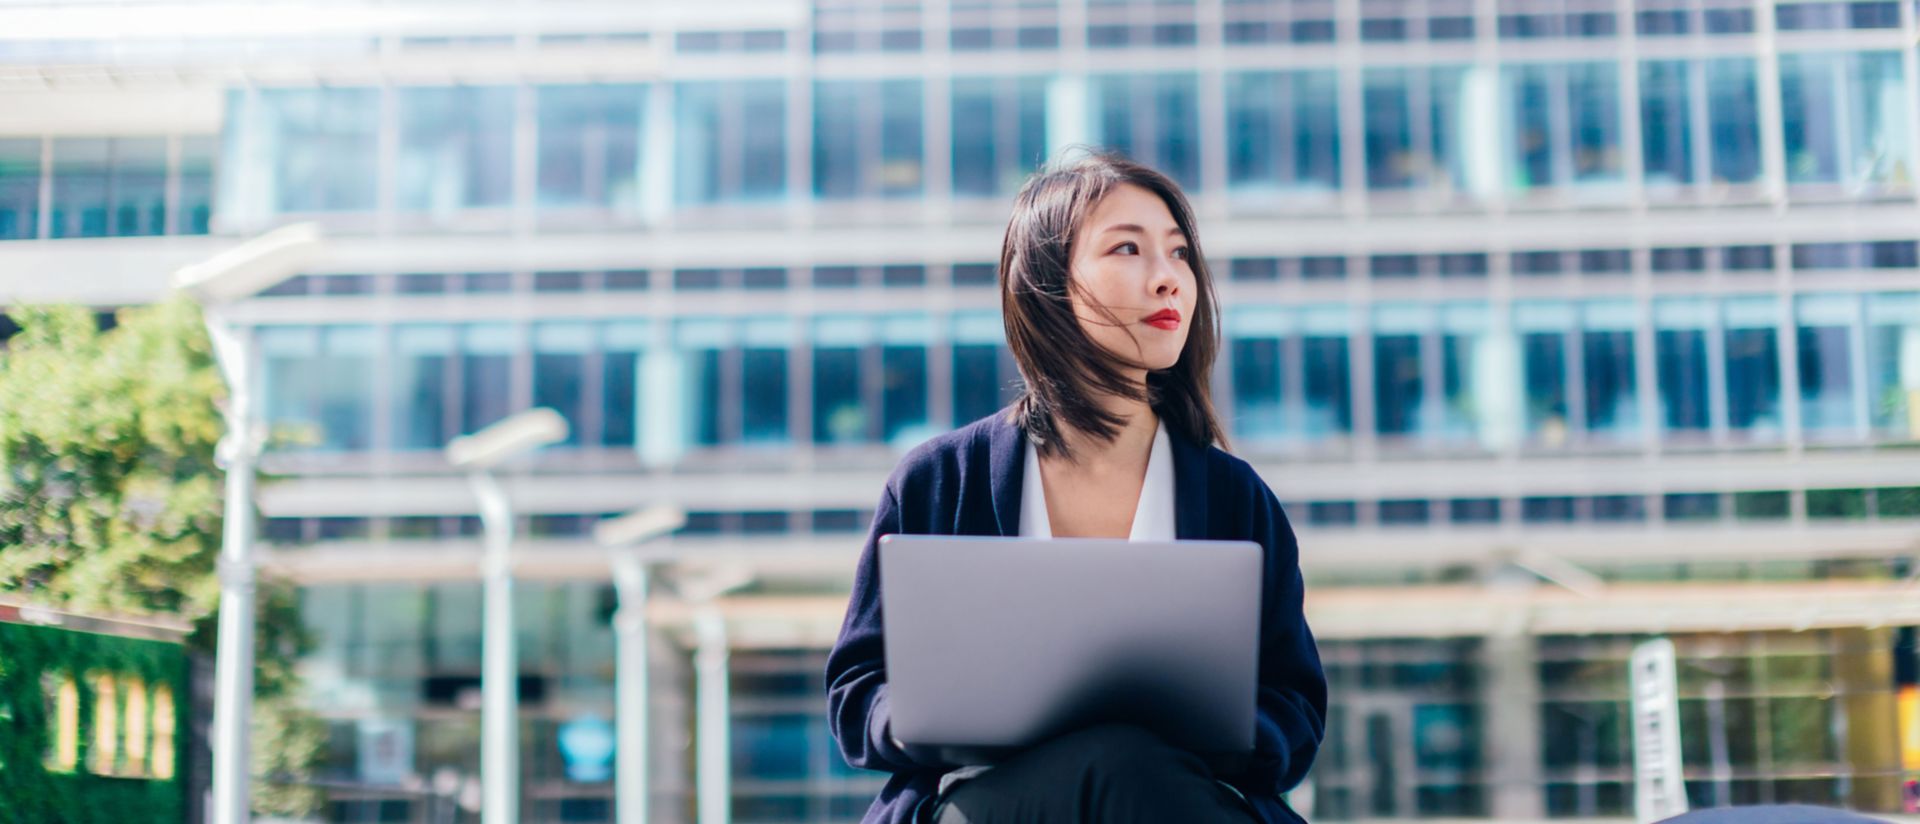 Imagem de uma mulher com um computador portátil, sentada à frente de um edifício